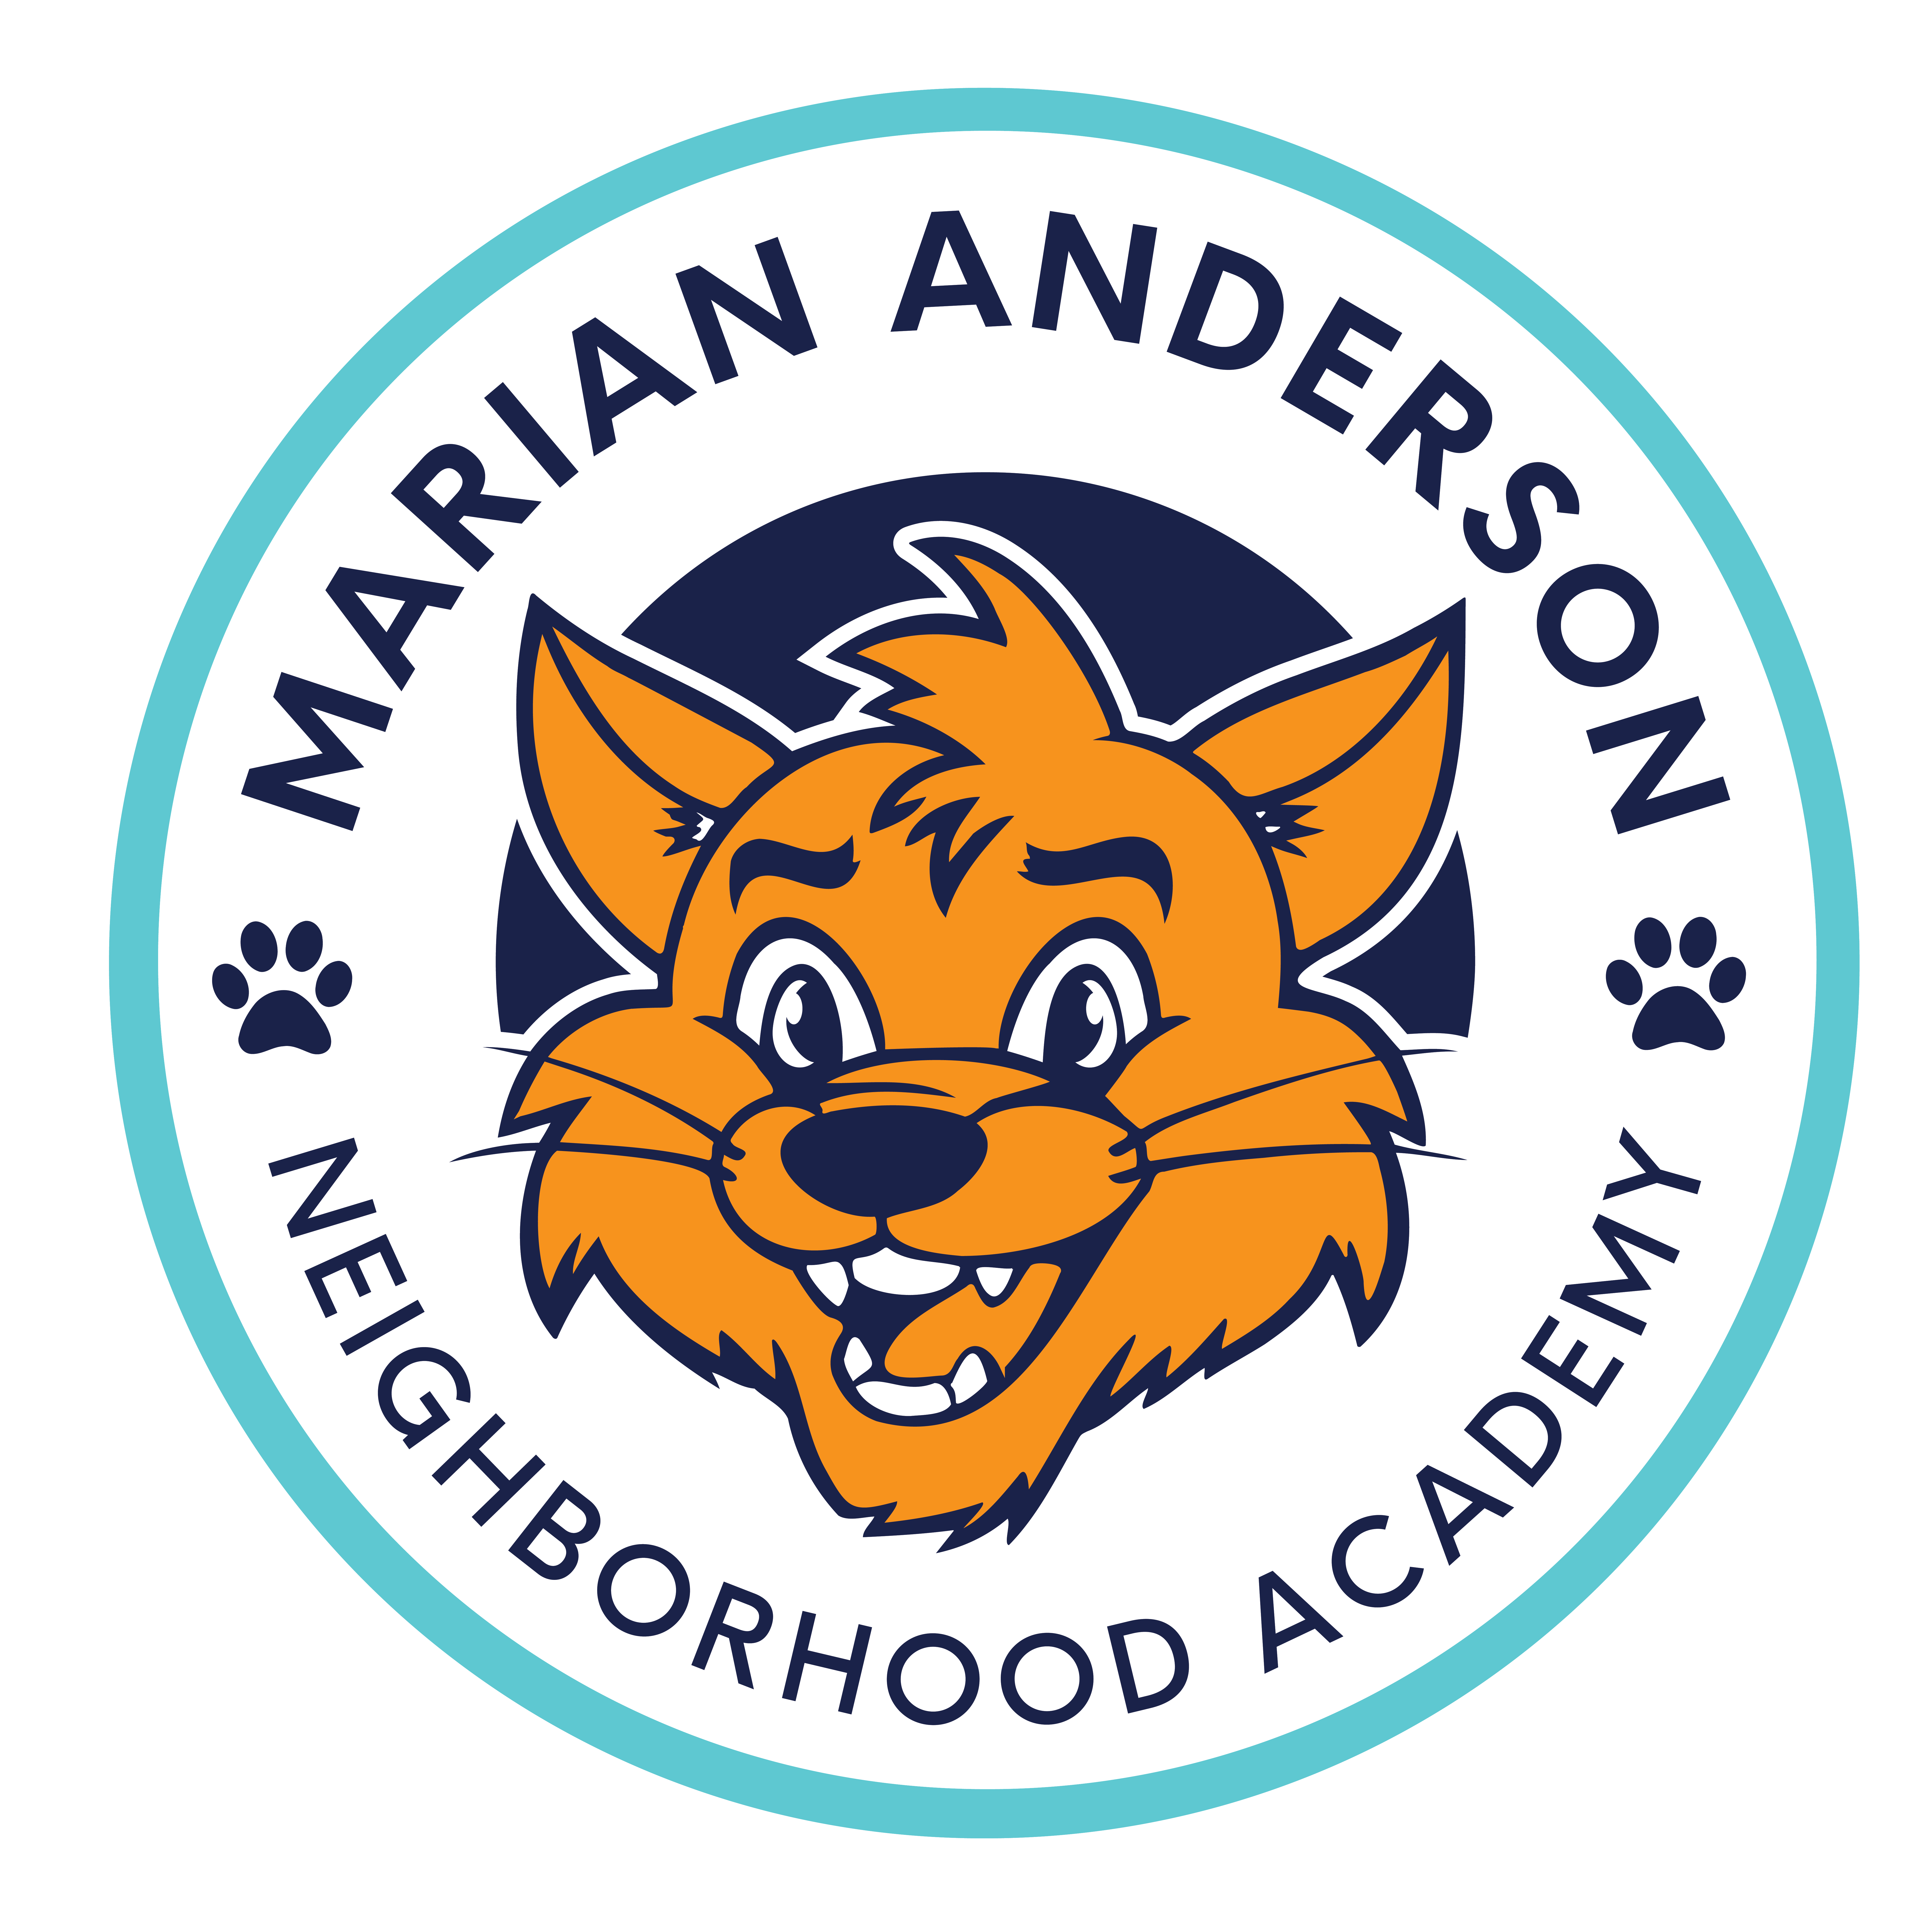 Marian Anderson Neighborhood Academy